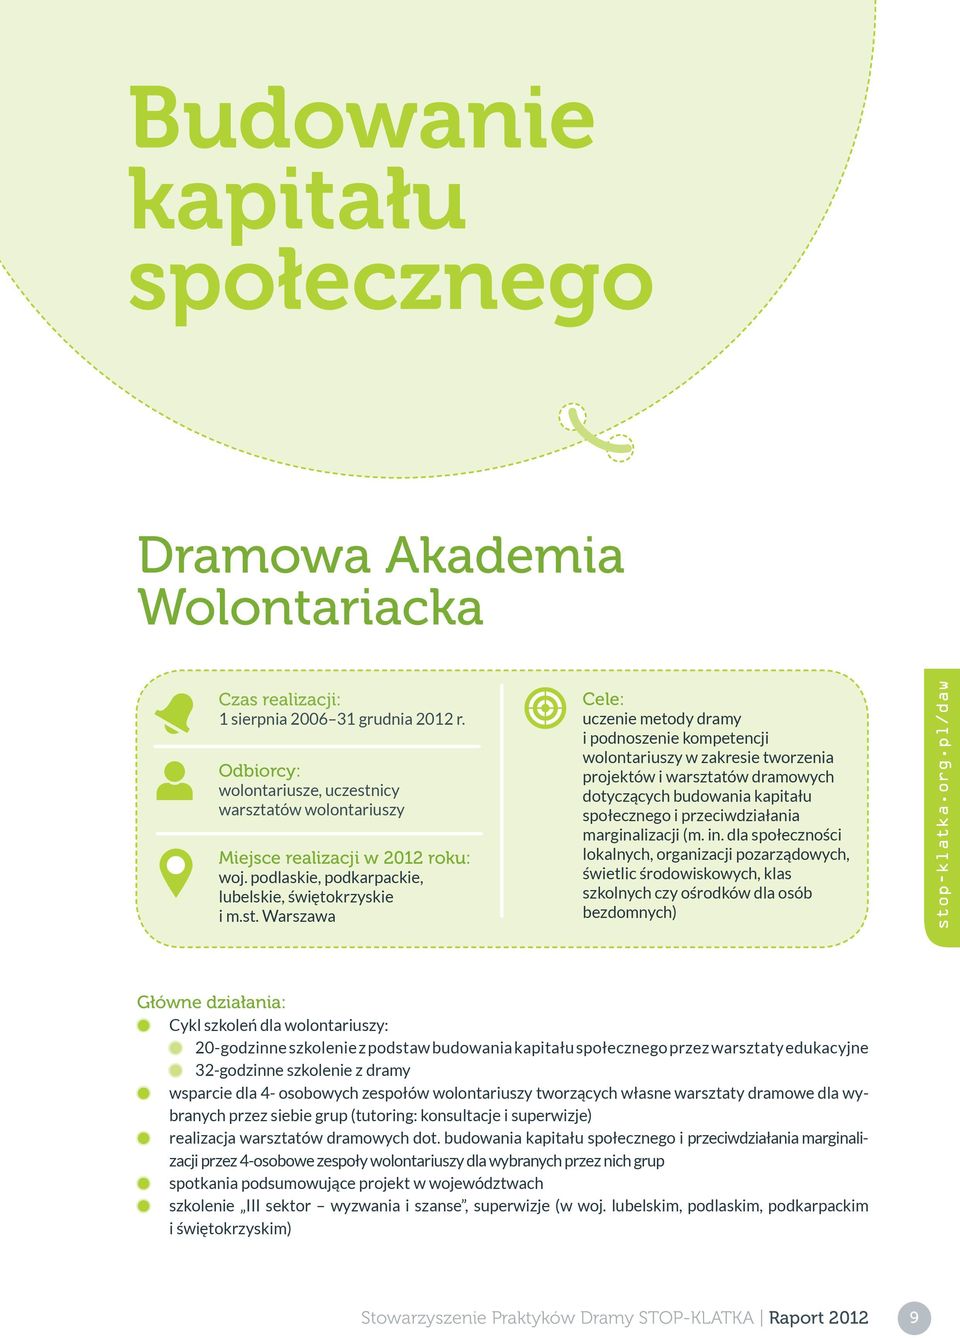 icy warsztatów wolontariuszy Miejsce realizacji w 2012 roku: woj. podlaskie, podkarpackie, lubelskie, świętokrzyskie i m.st.